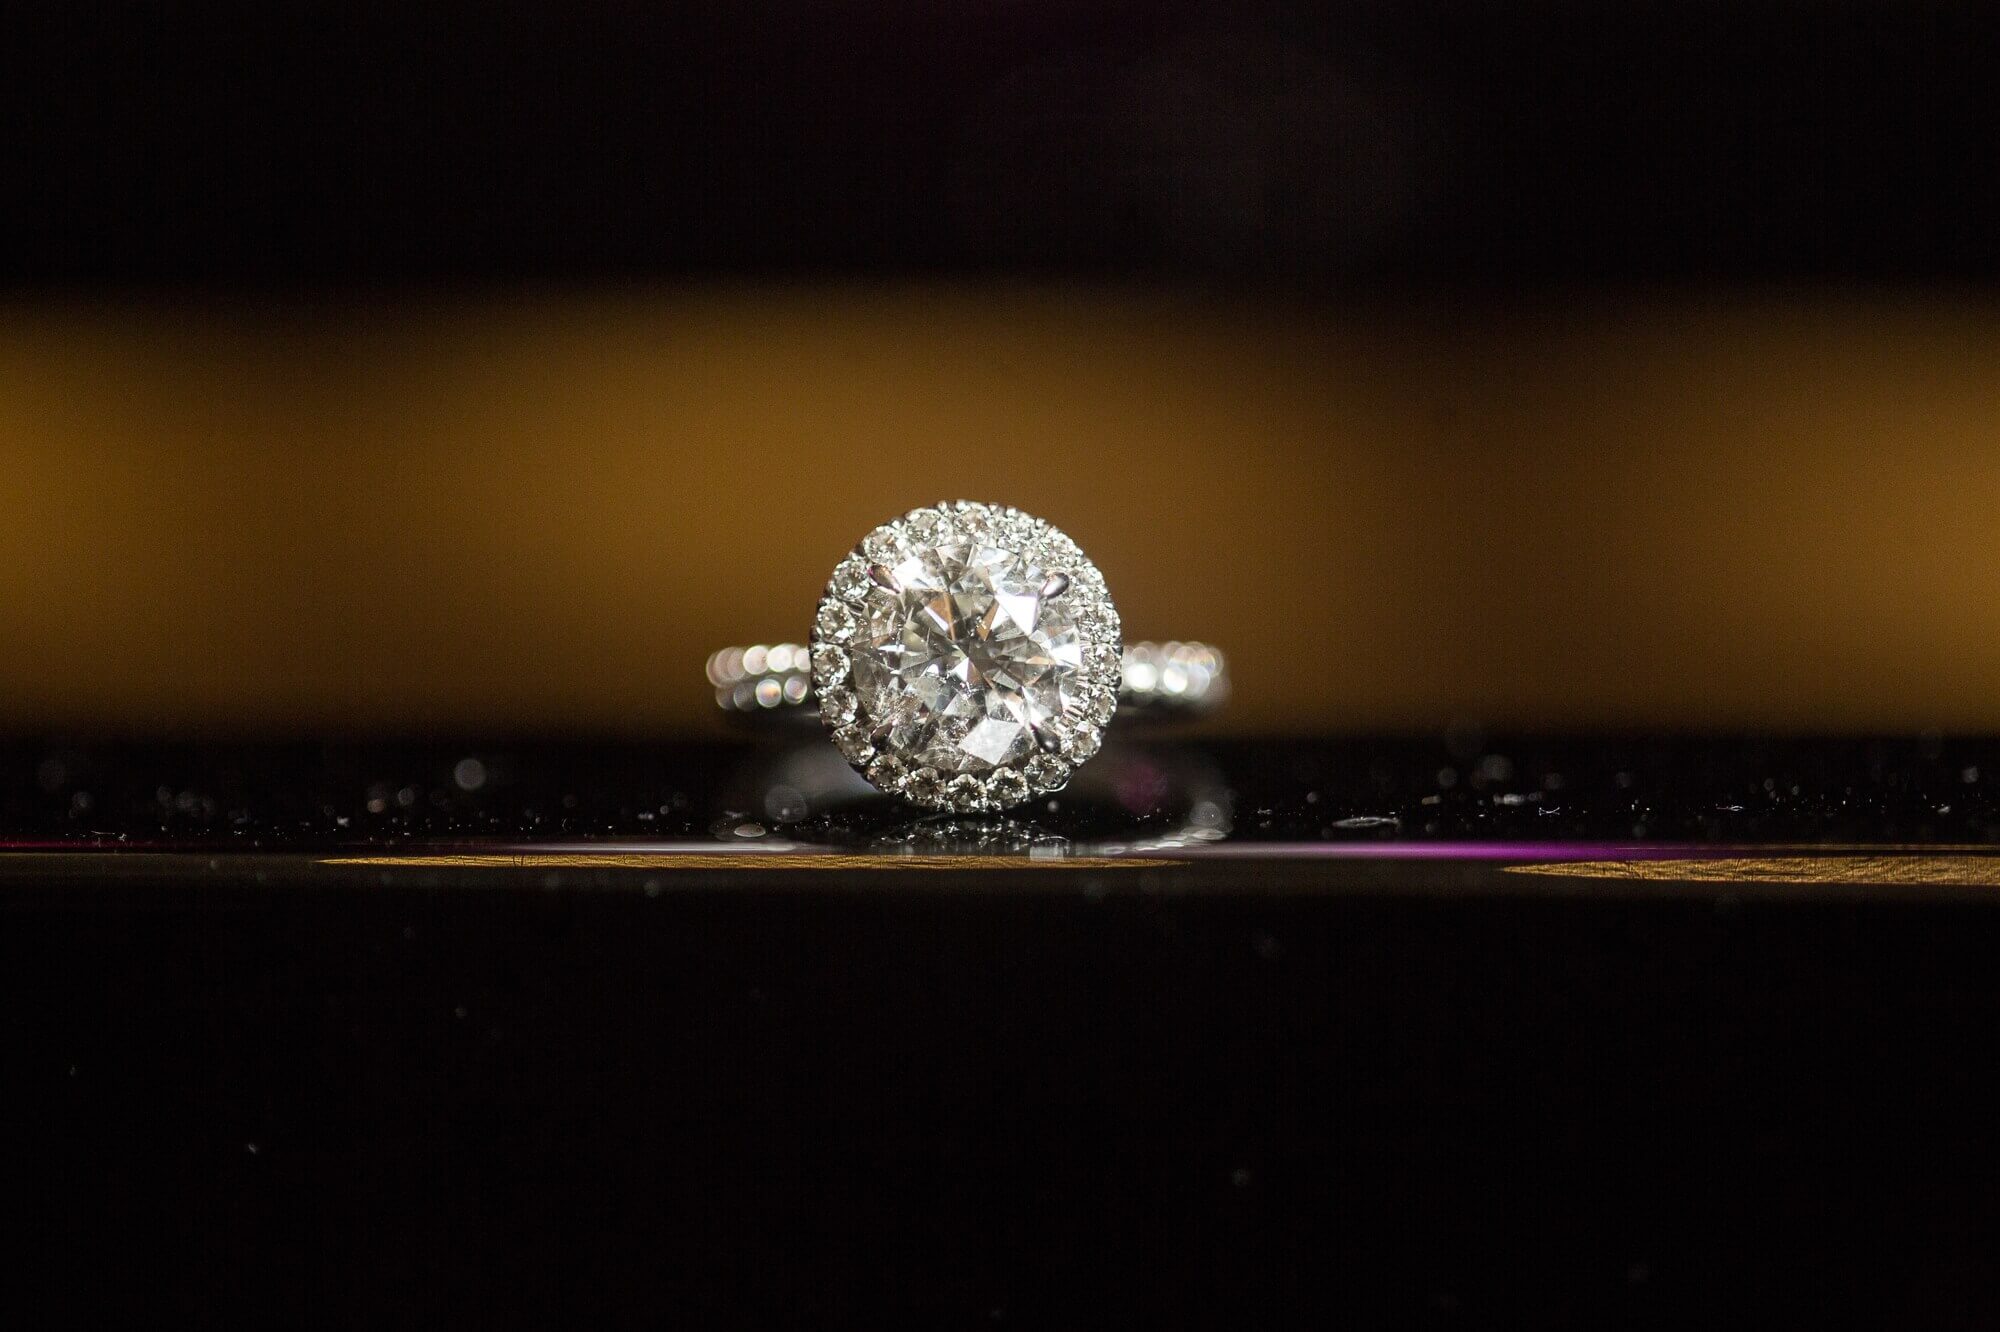 Detail of the diamond ring at Lambton G&CC in Toronto